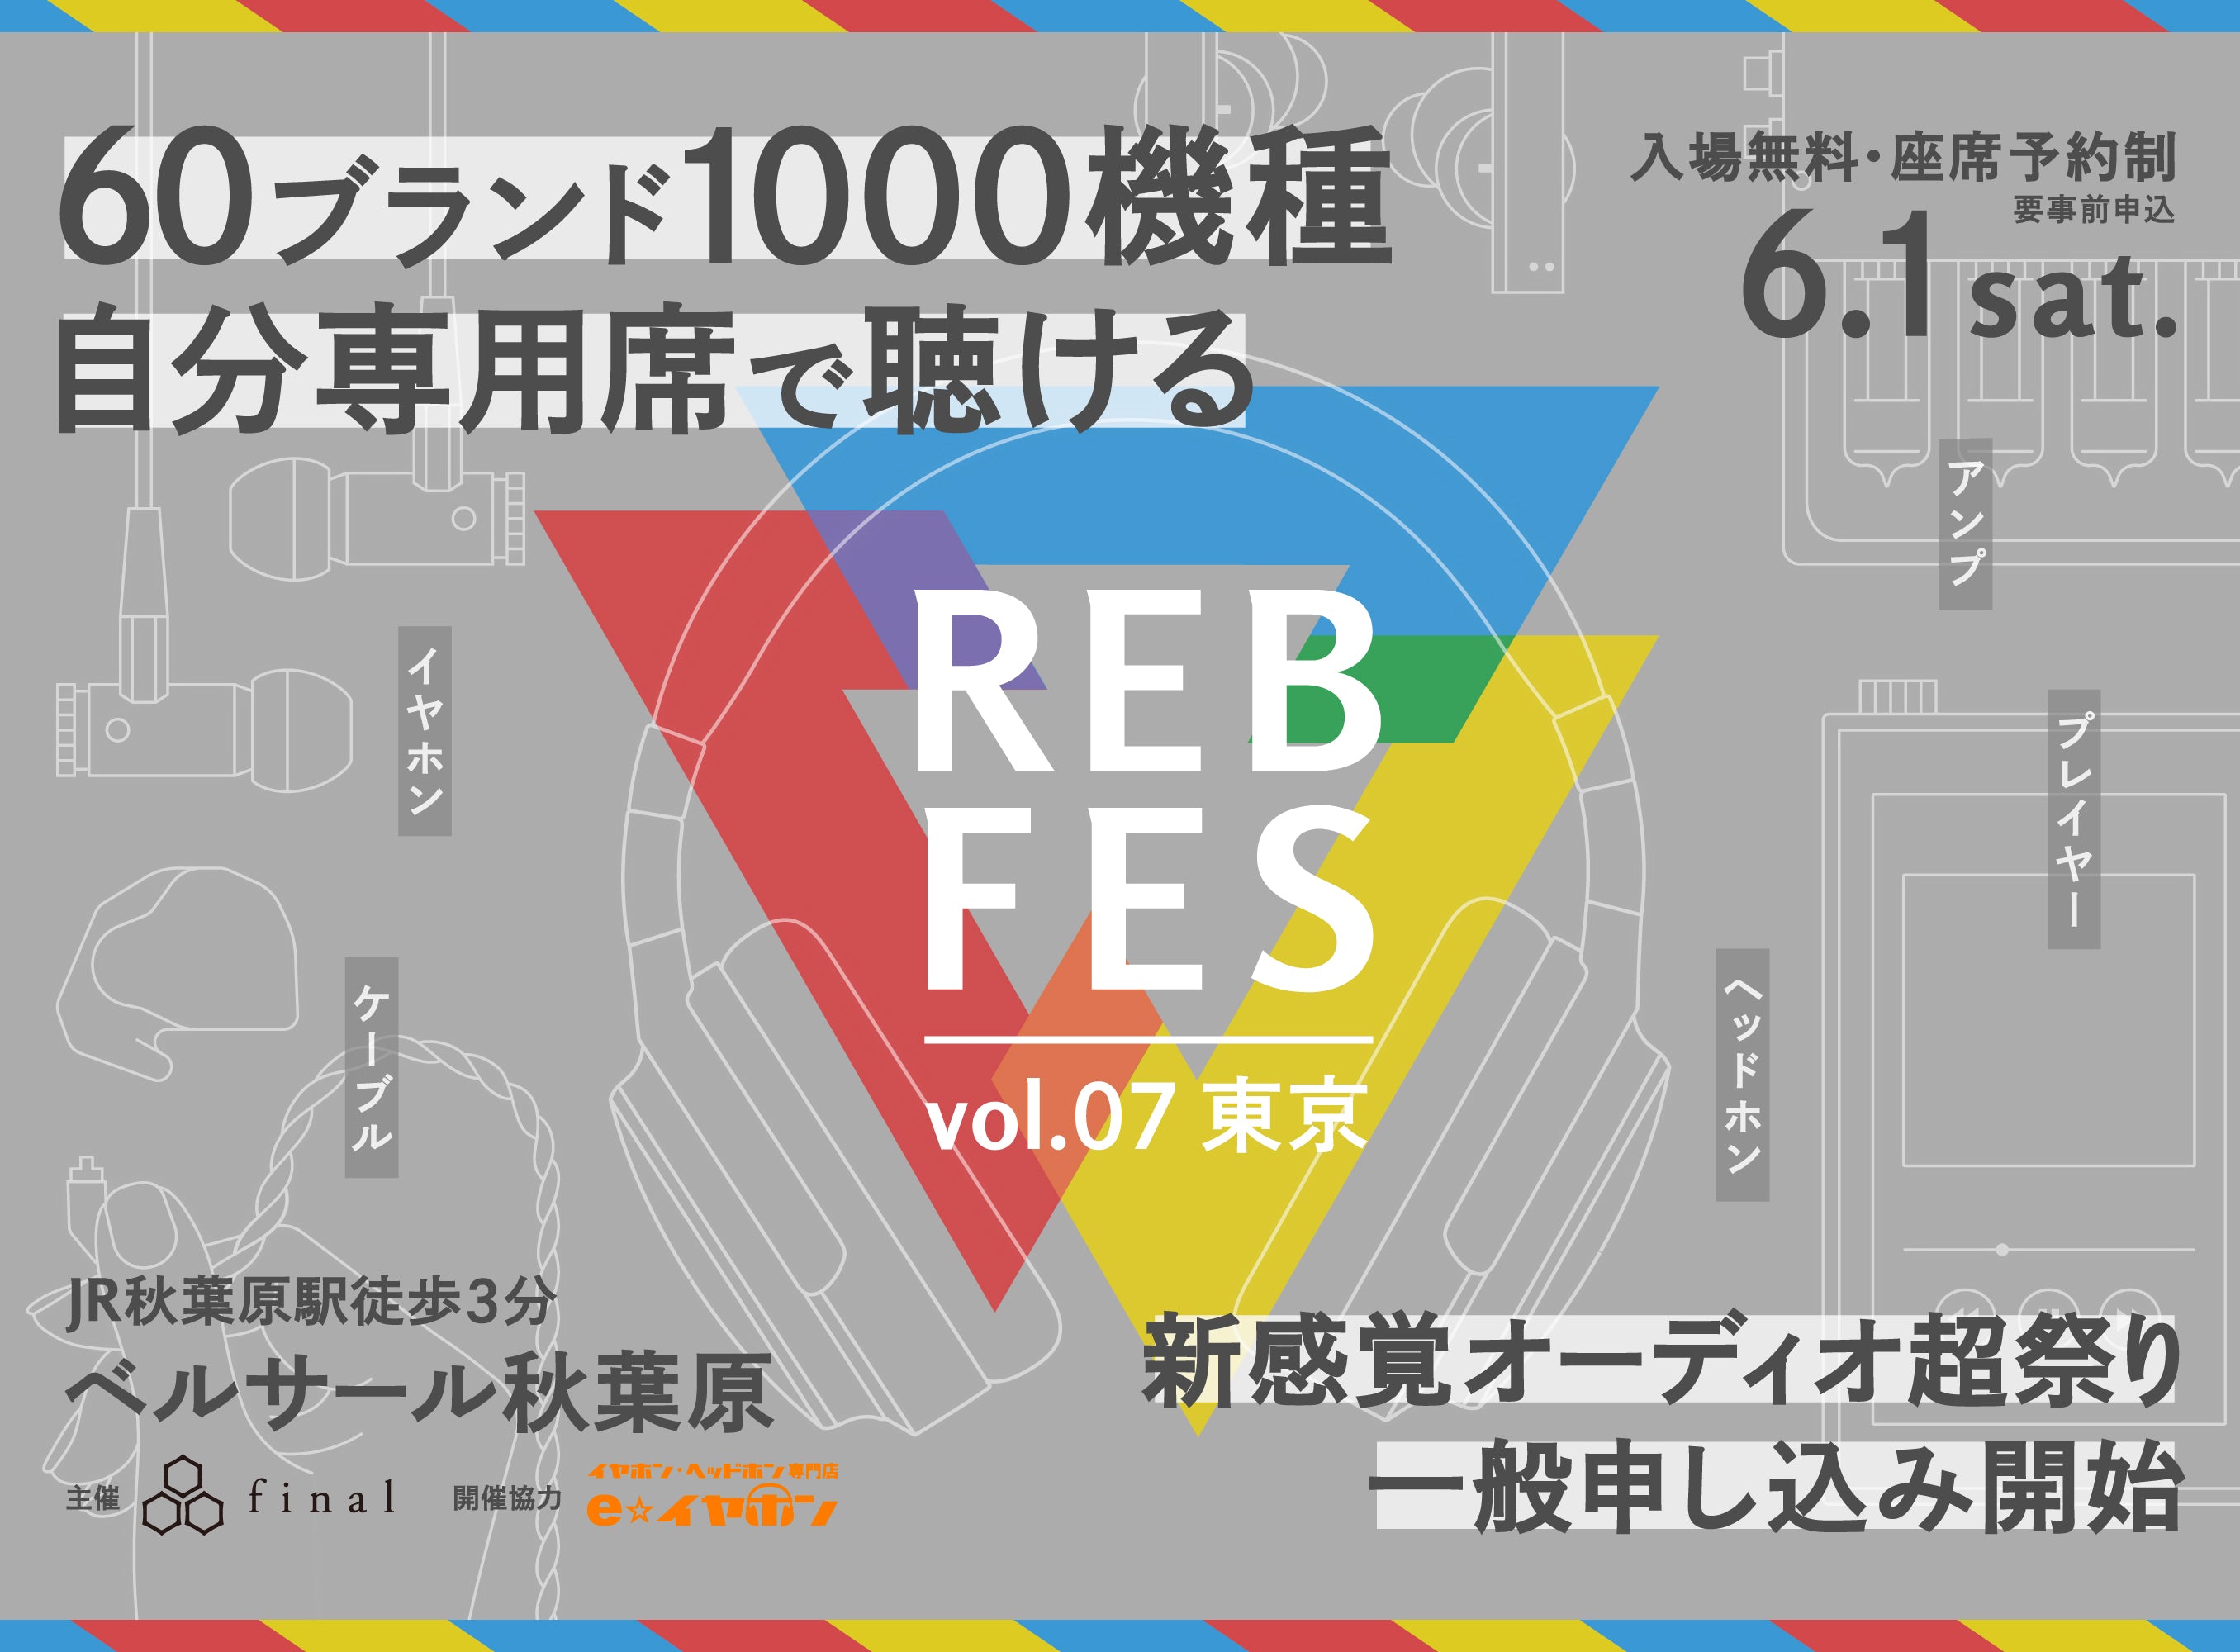 REB fes vol.07@東京」一般枠募集開始！第一次募集お申し込み多数